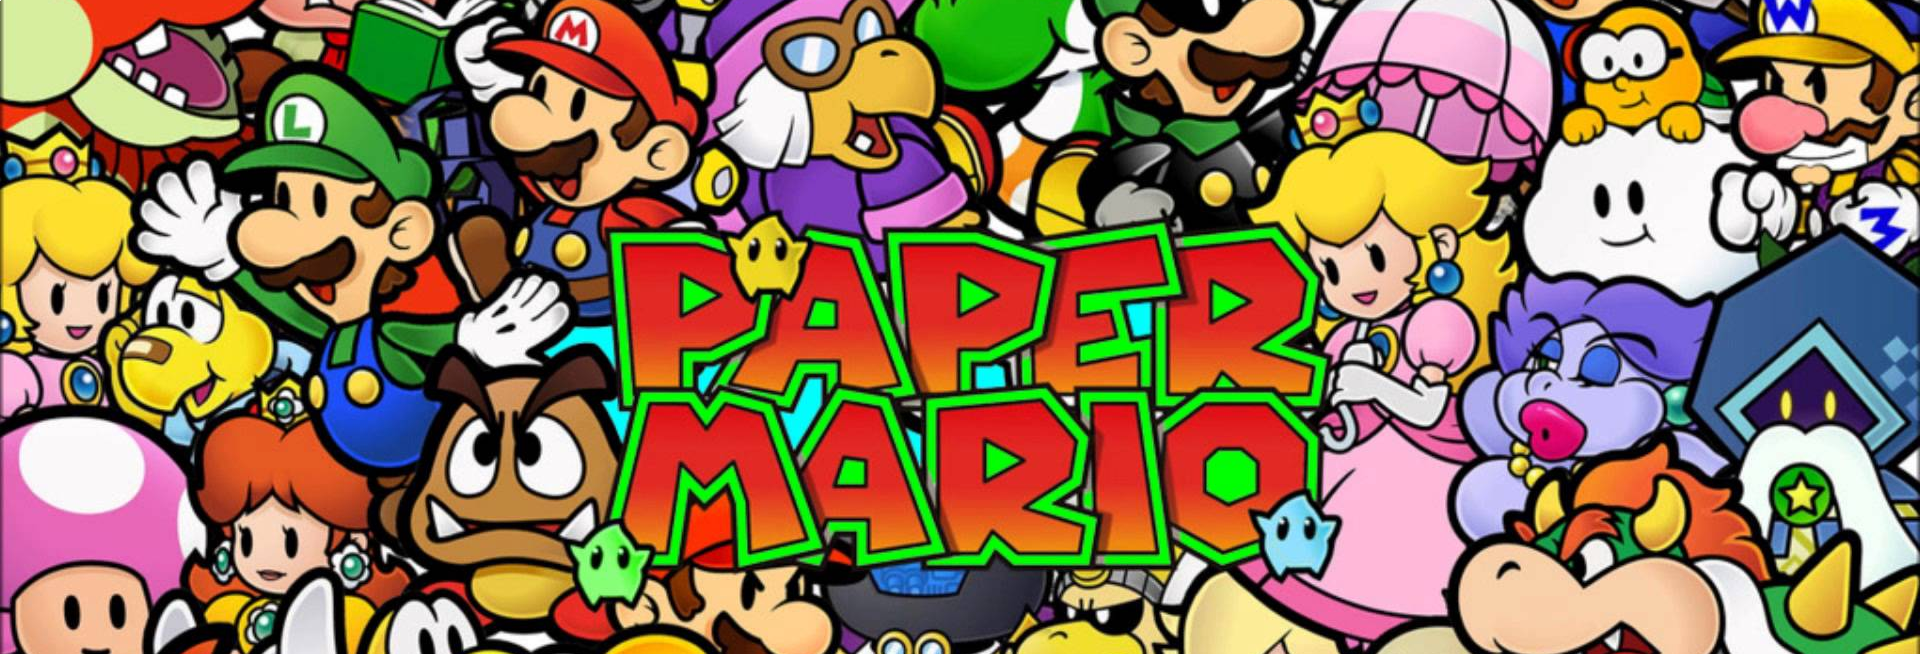 Banner Paper Mario The Thousand Year Door